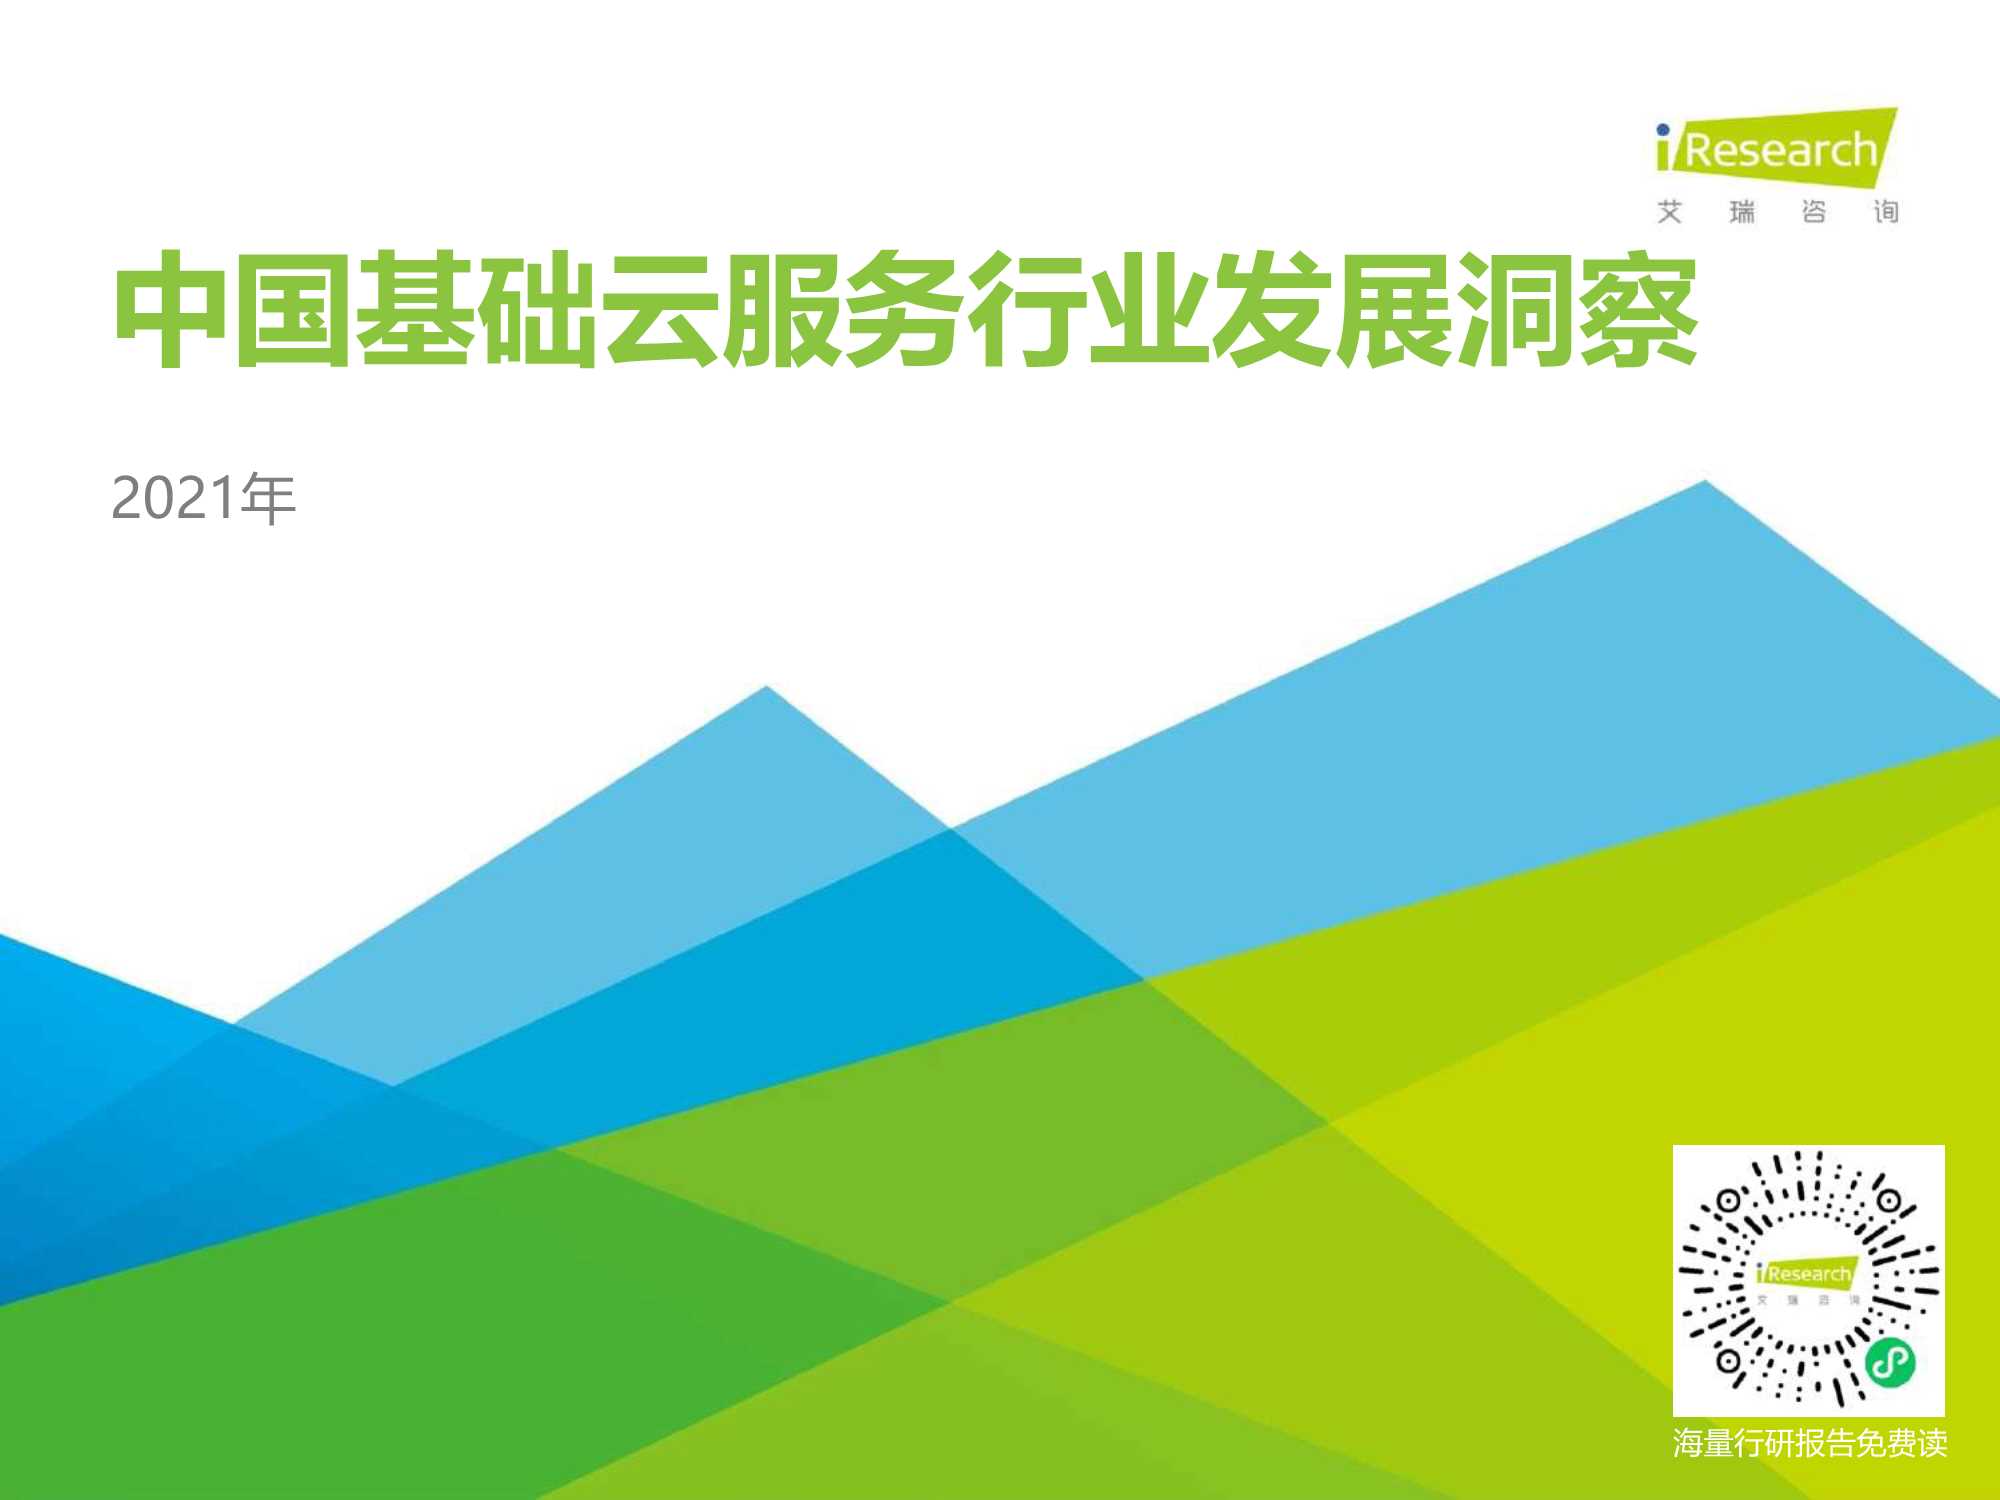 艾瑞咨询-2021年中国基础云服务行业发展洞察-2021.07-34页